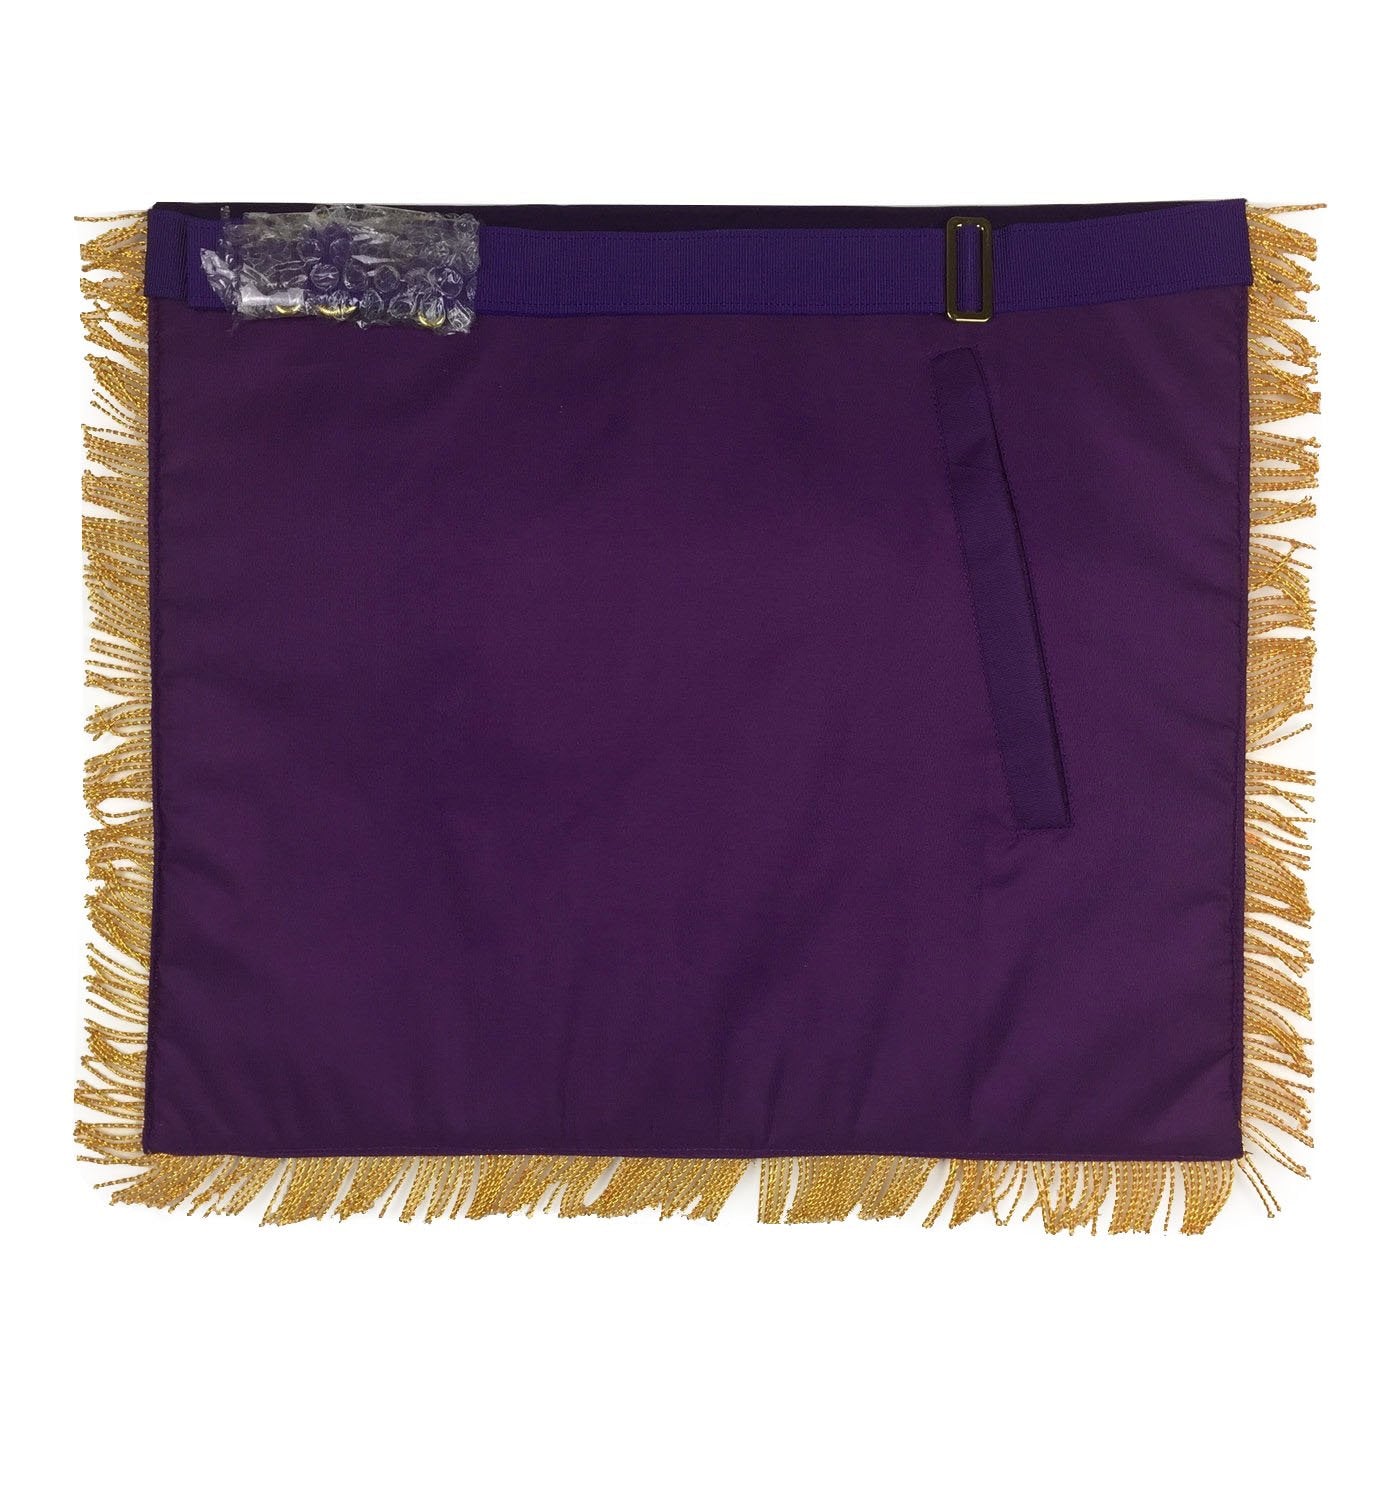 Past Master Blue Lodge Apron - Royal Purple Velvet with Gold Fringe - Bricks Masons